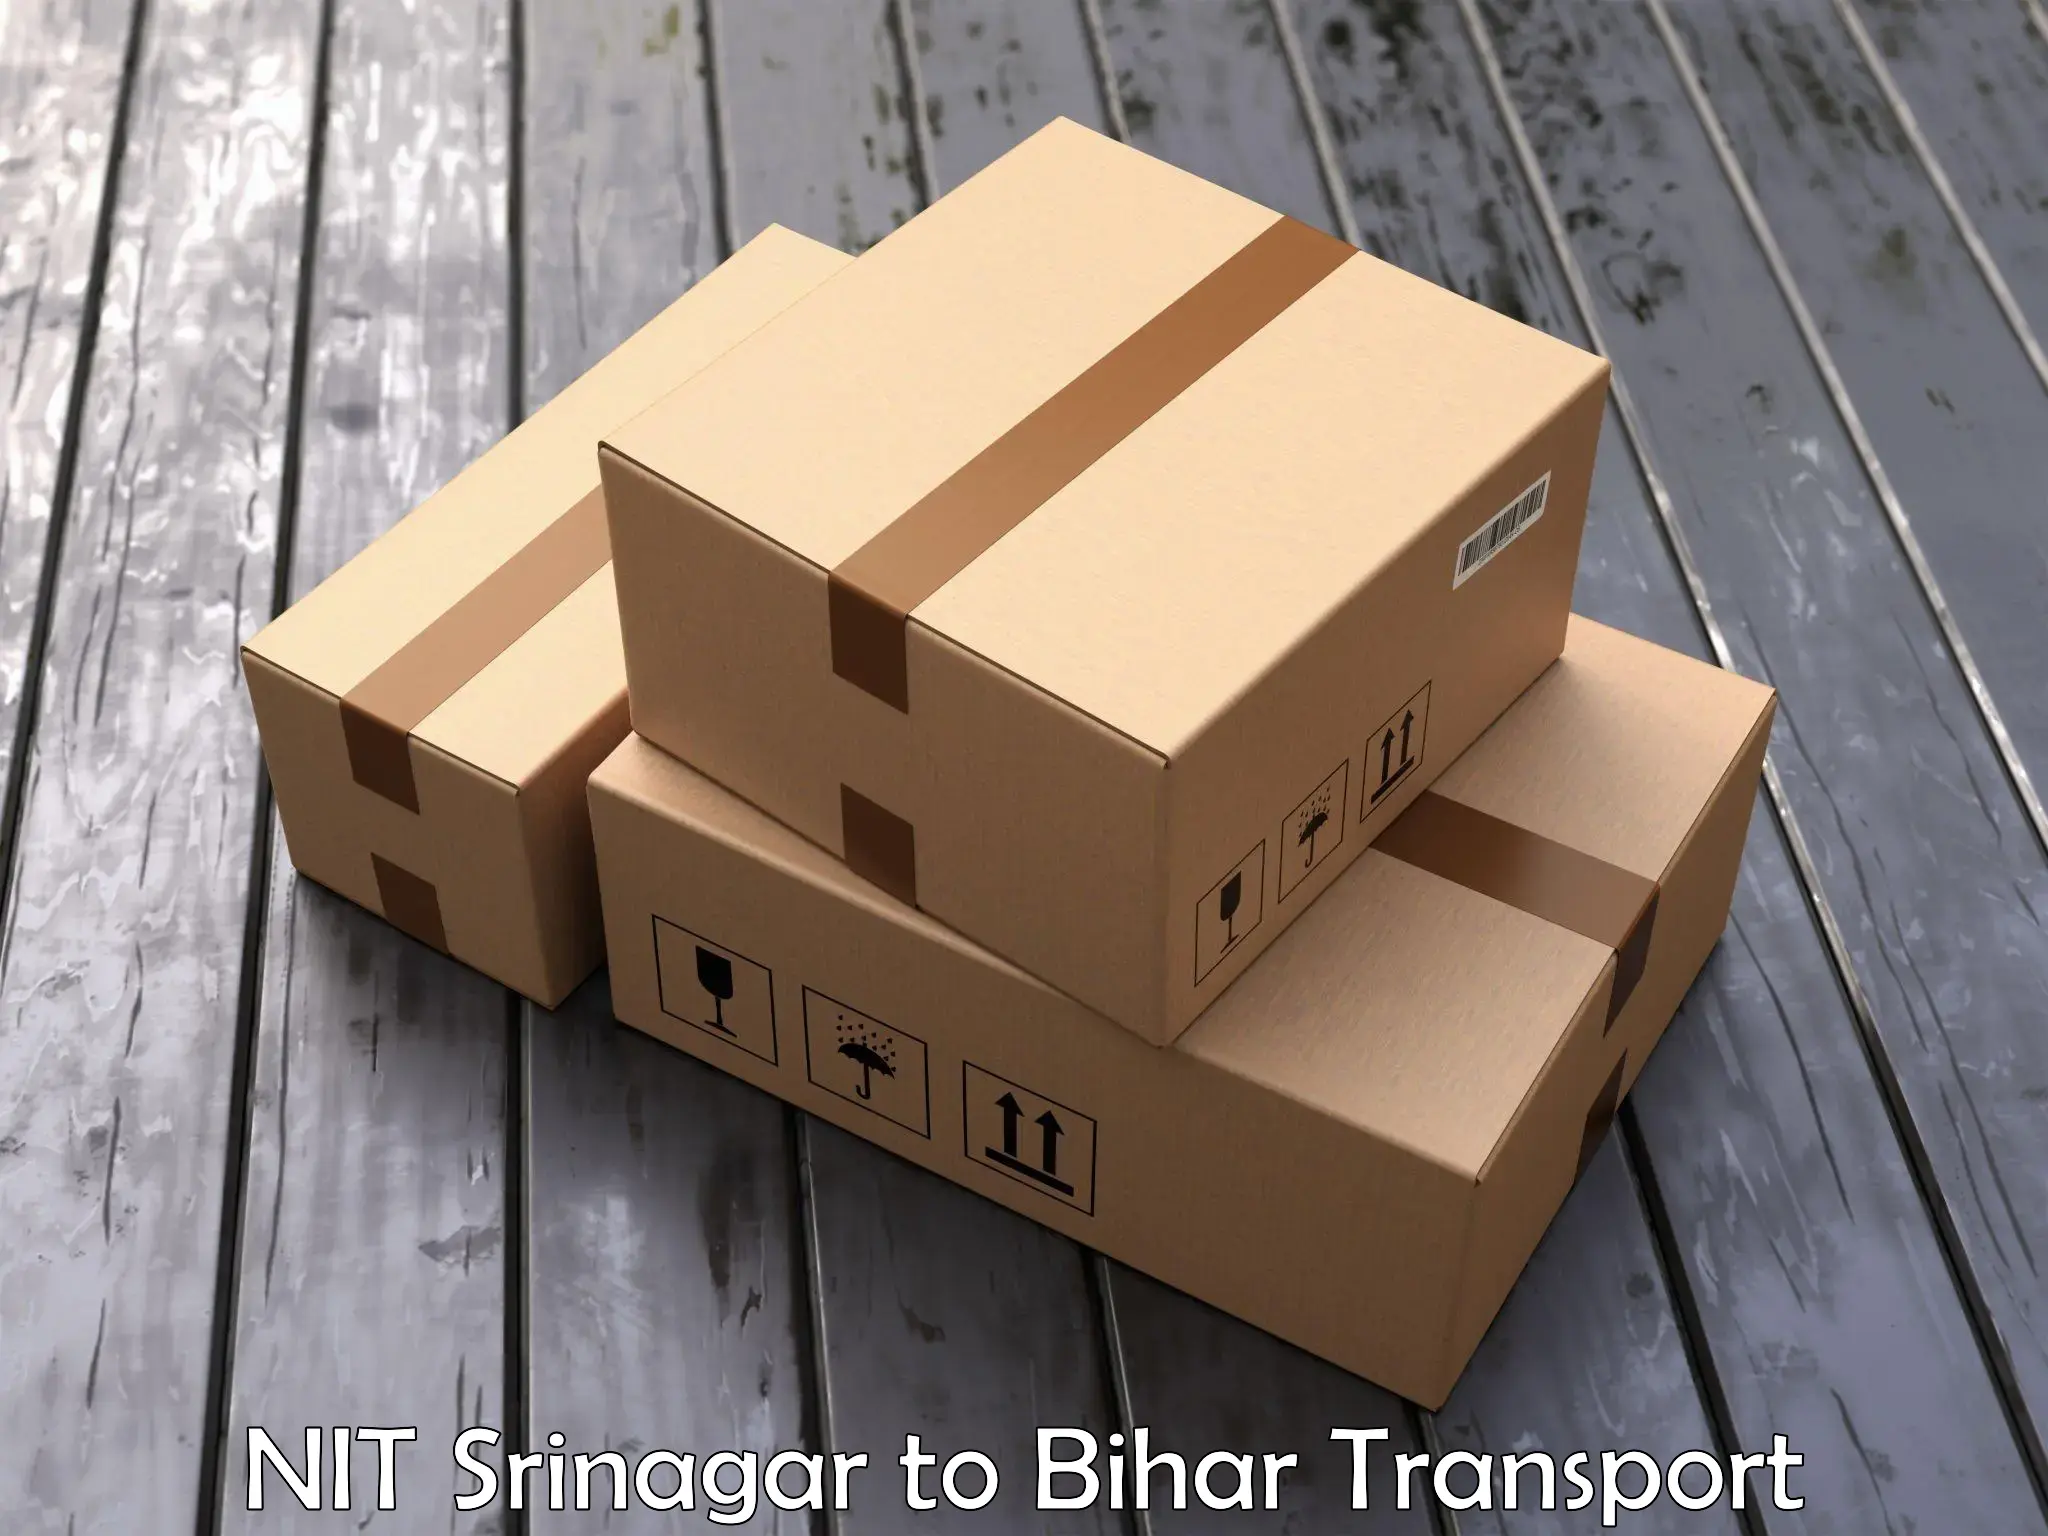 Nationwide transport services NIT Srinagar to Amba Kutumba